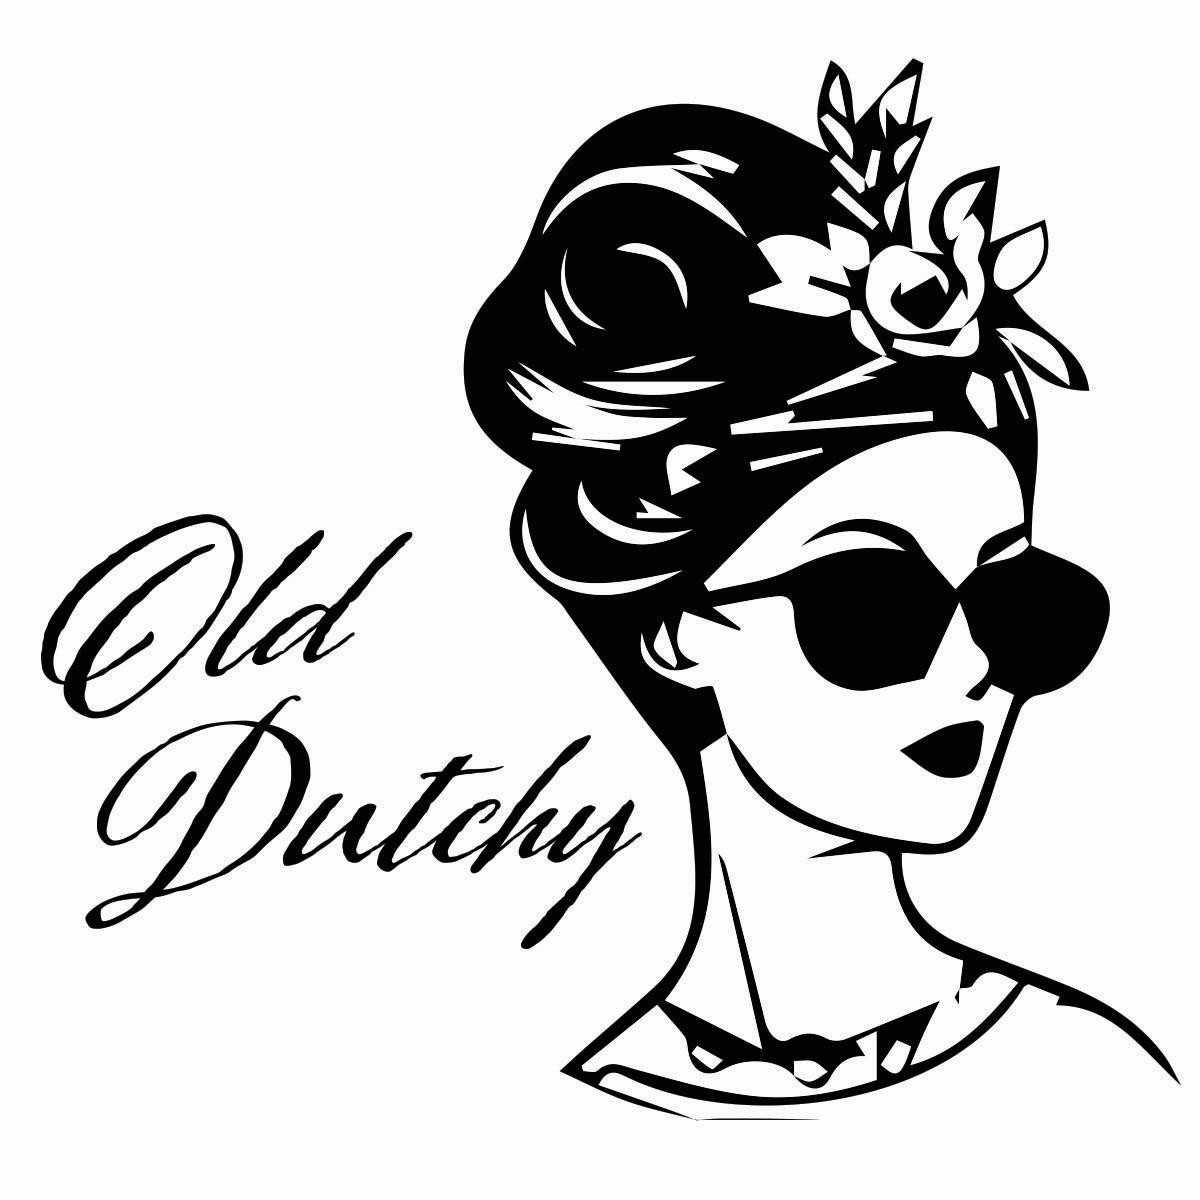 OldDutchy's images